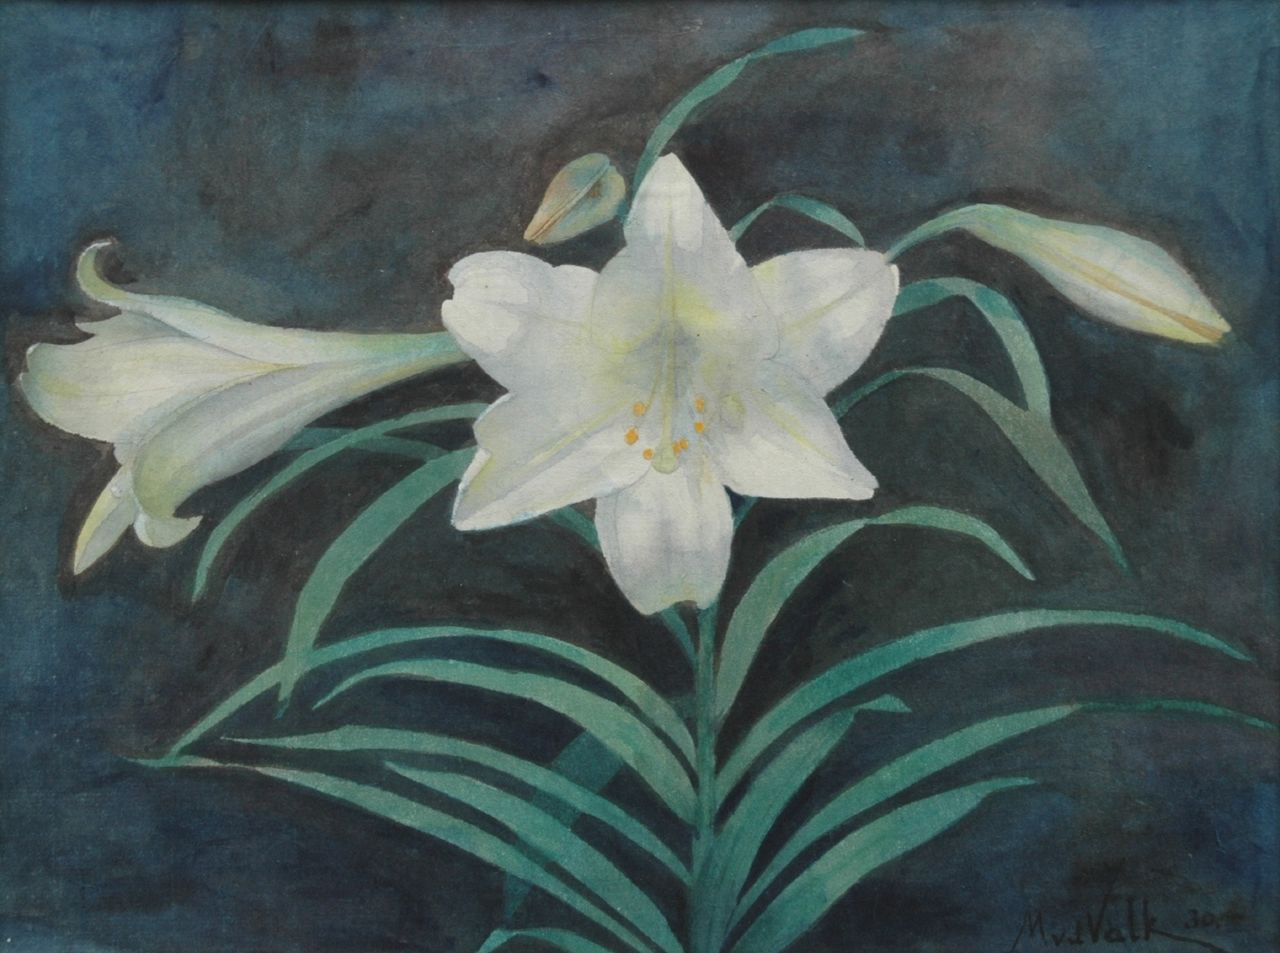 Mauritx Willem van der Valk | White lilly, Bleistift und Aquarell auf Papier, 27,9 x 36,8 cm, signed l.r. und painted '30